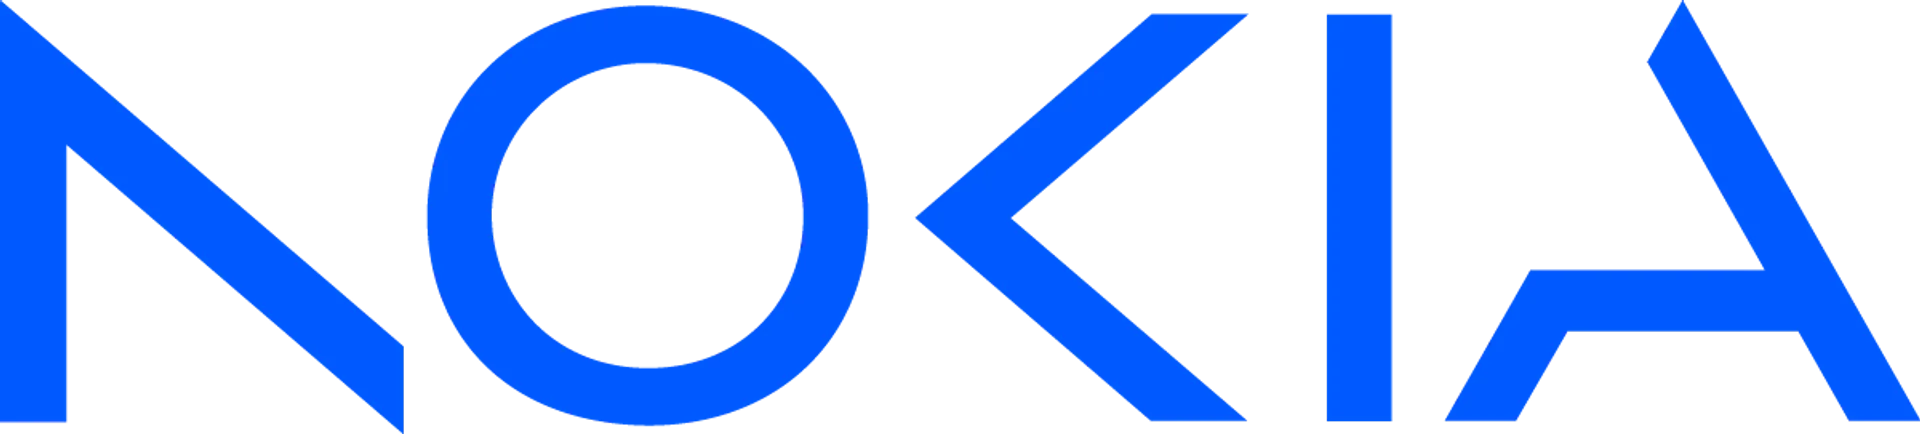 NOKIA logo de folhetos